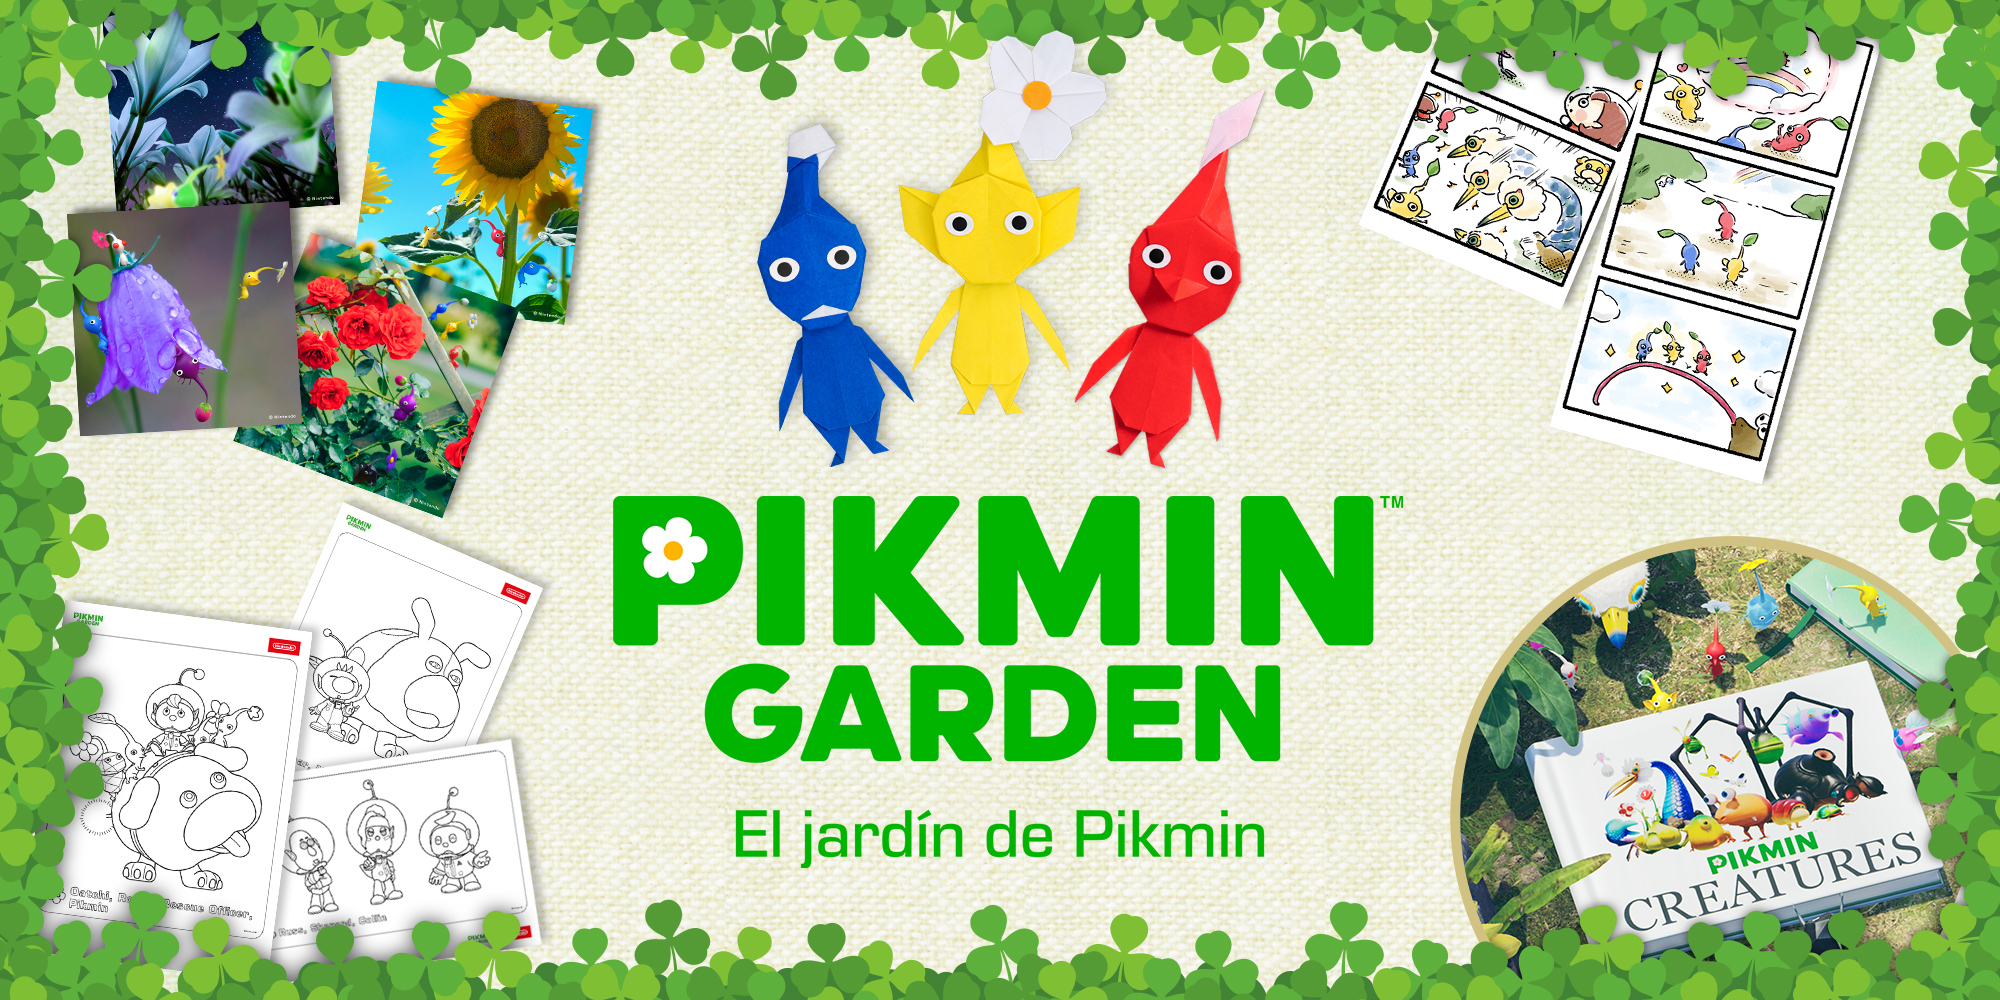 El jardín de Pikmin